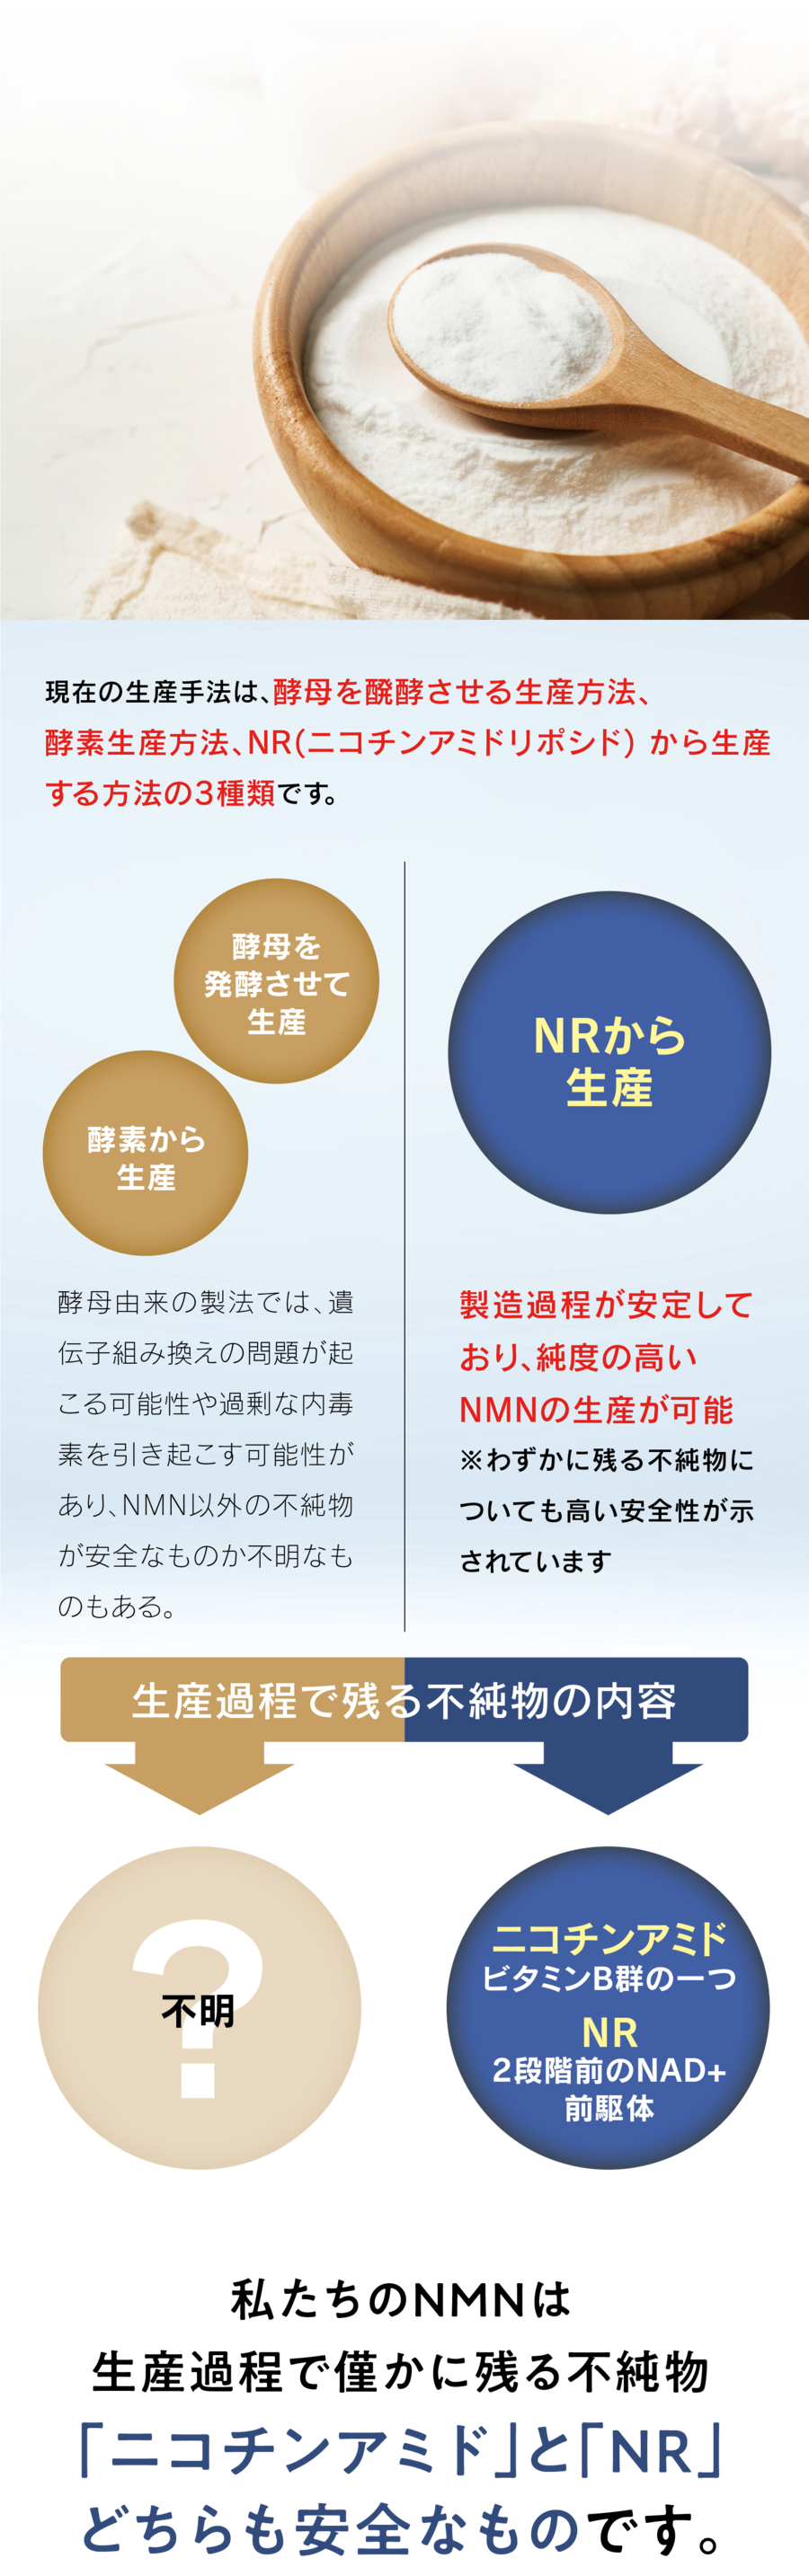 現在の生産手法は、酵母を醗酵させる生産方法、酵素生産方法、NR(ニコチンアミドリポシド) から生産する方法の3種類です。　私たちのNMNは生産過程で僅かに残る不純物「ニコチンアミド」と「NR」どちらも安全なものです。